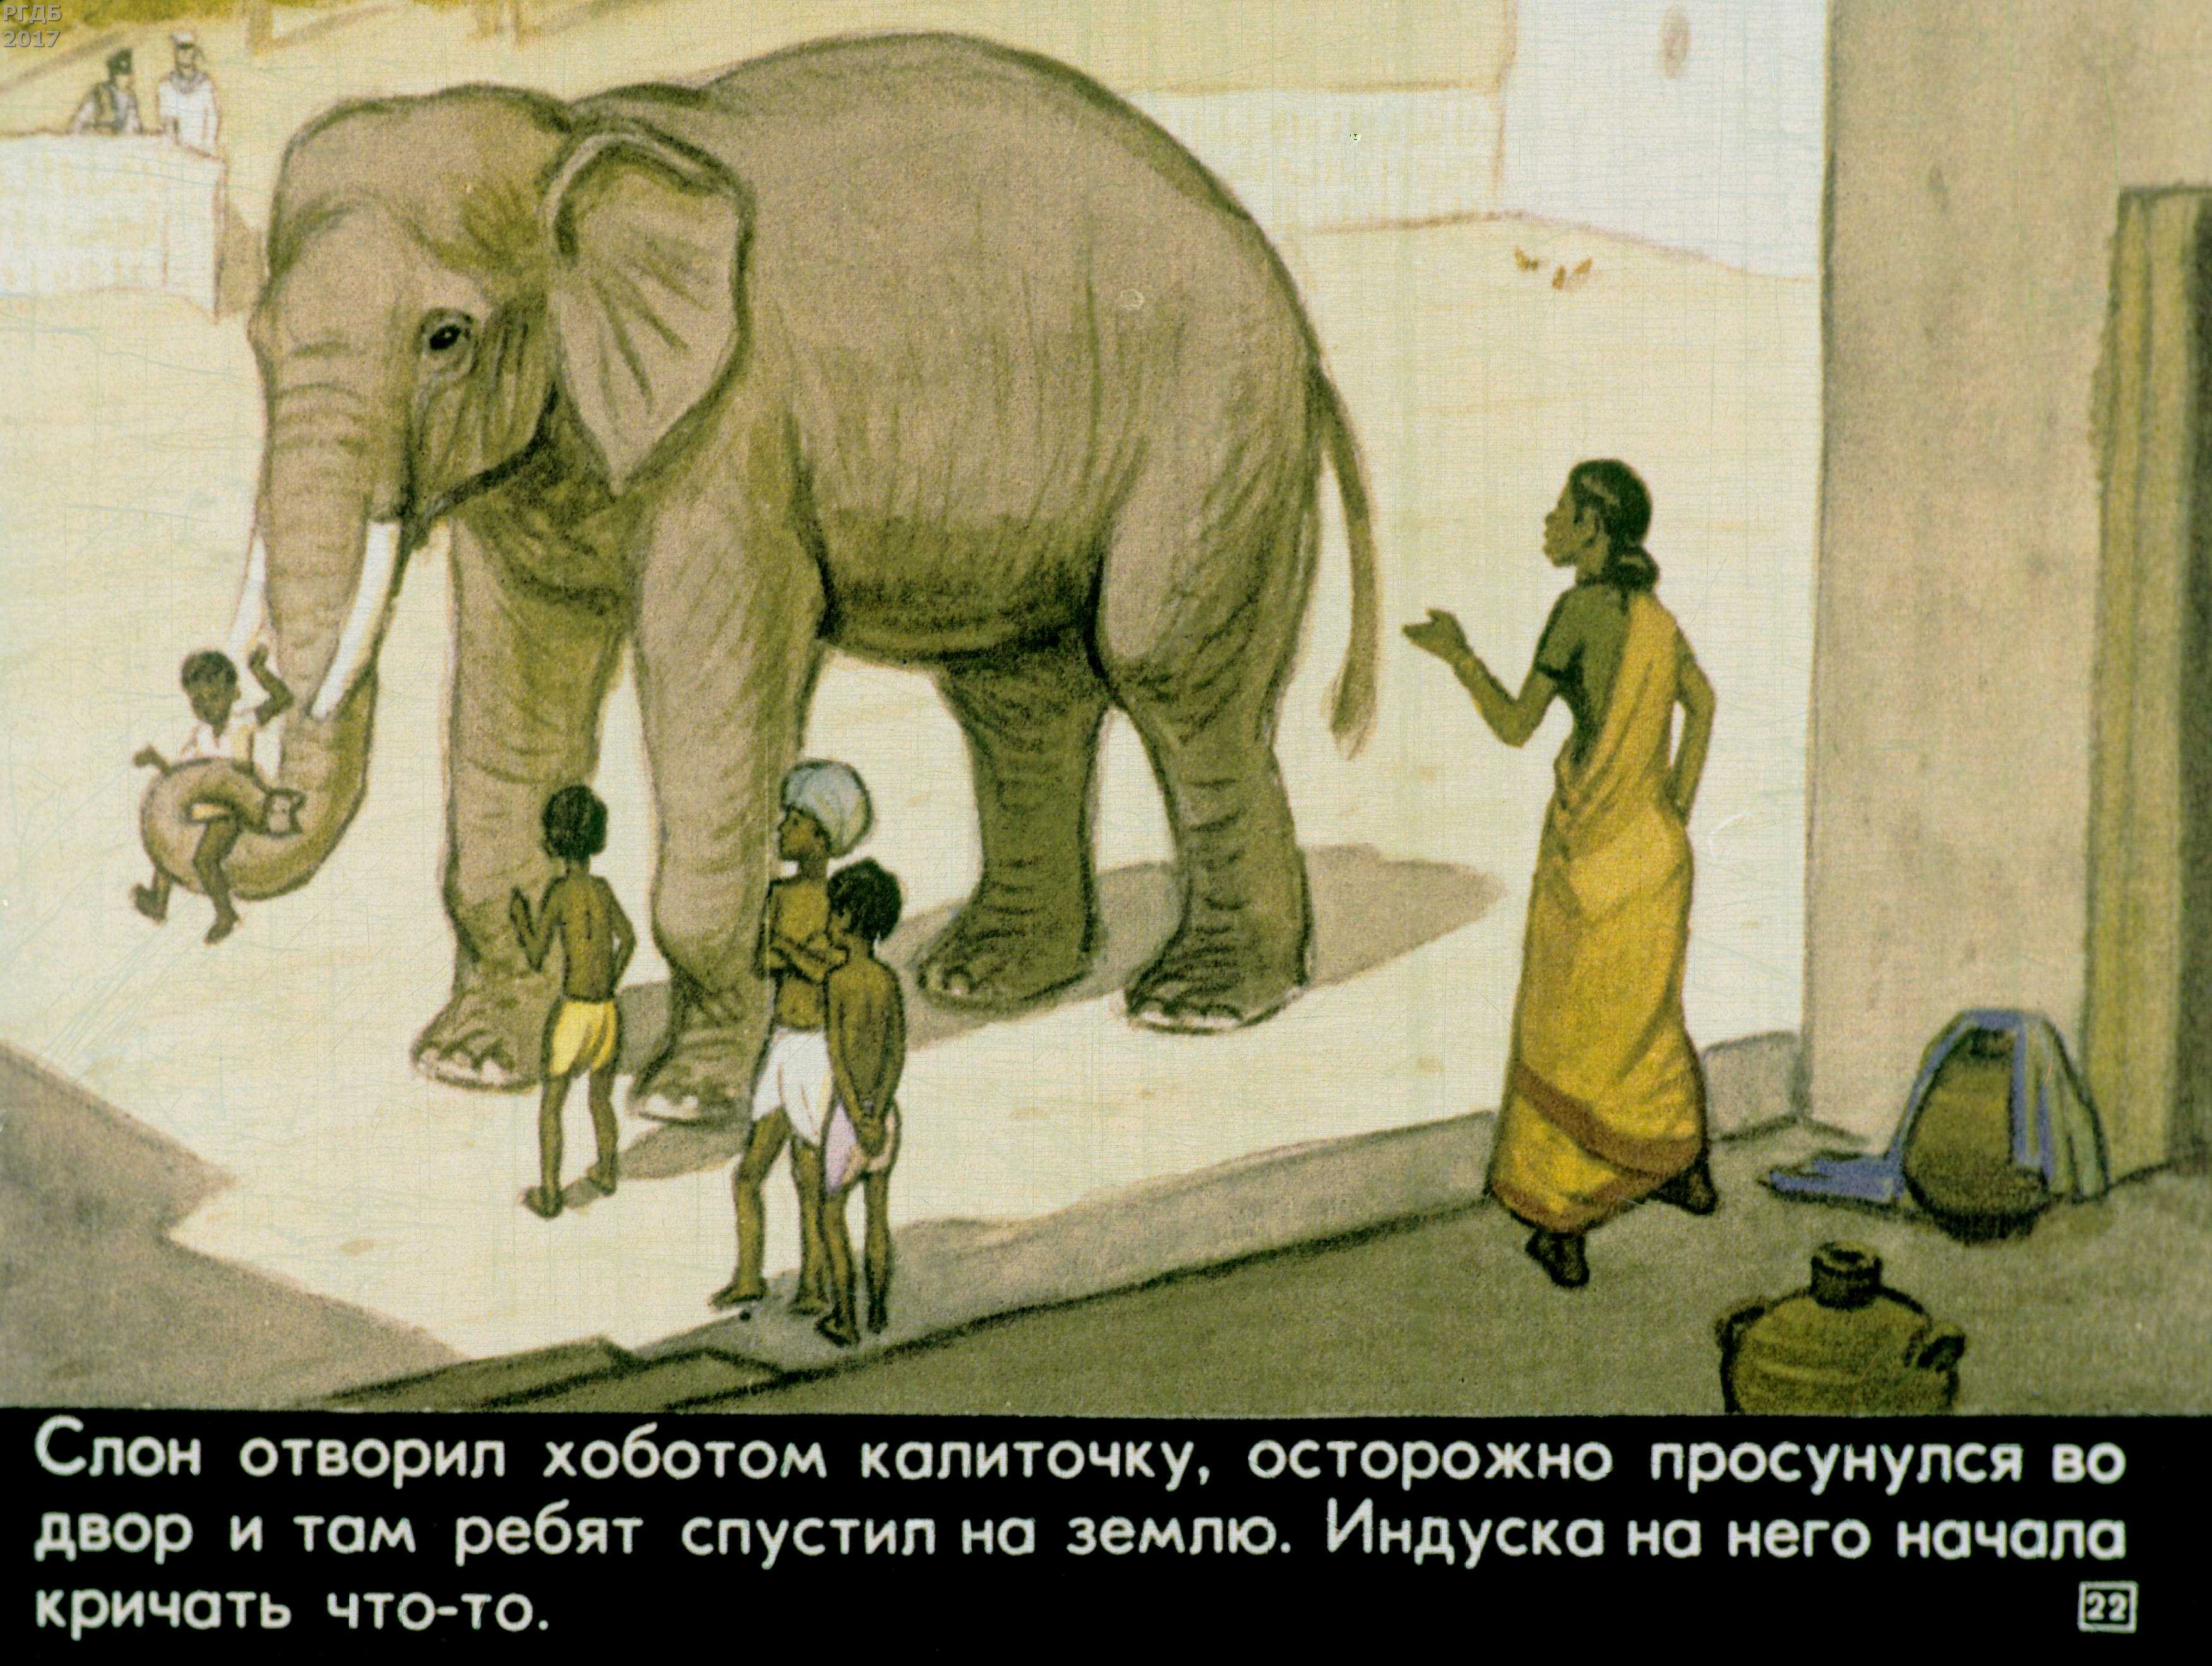 Читать про слона. Куприн а. и. "слон". Иллюстрации к рассказу Житкова про слона. Иллюстрация к рассказу про слона Житков.